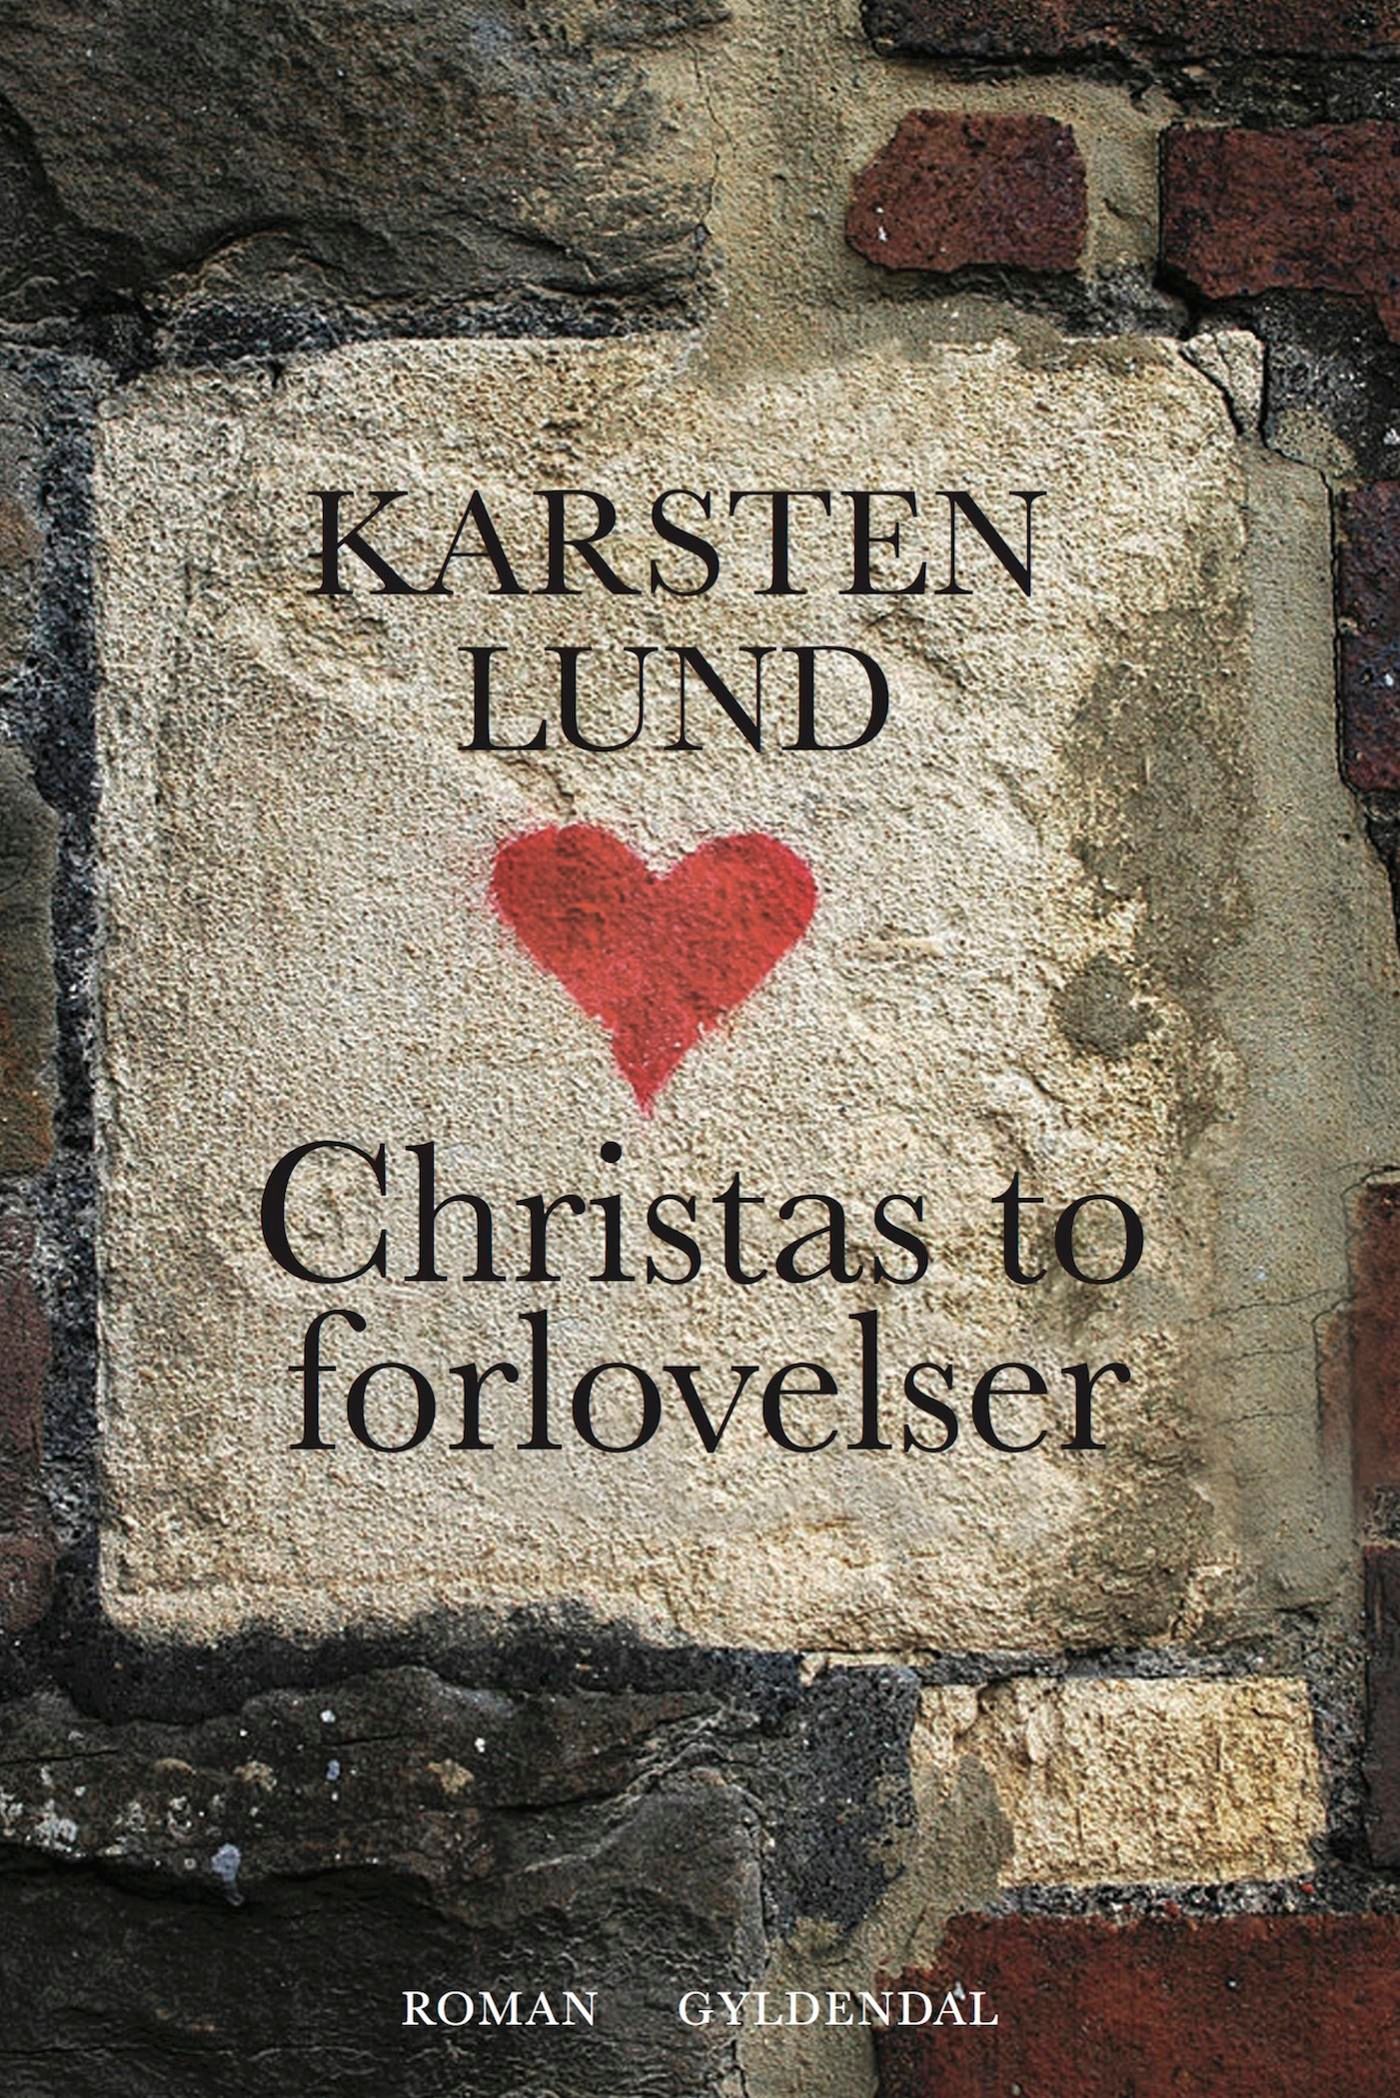 Christas to forlovelser, e-bog af Karsten Lund